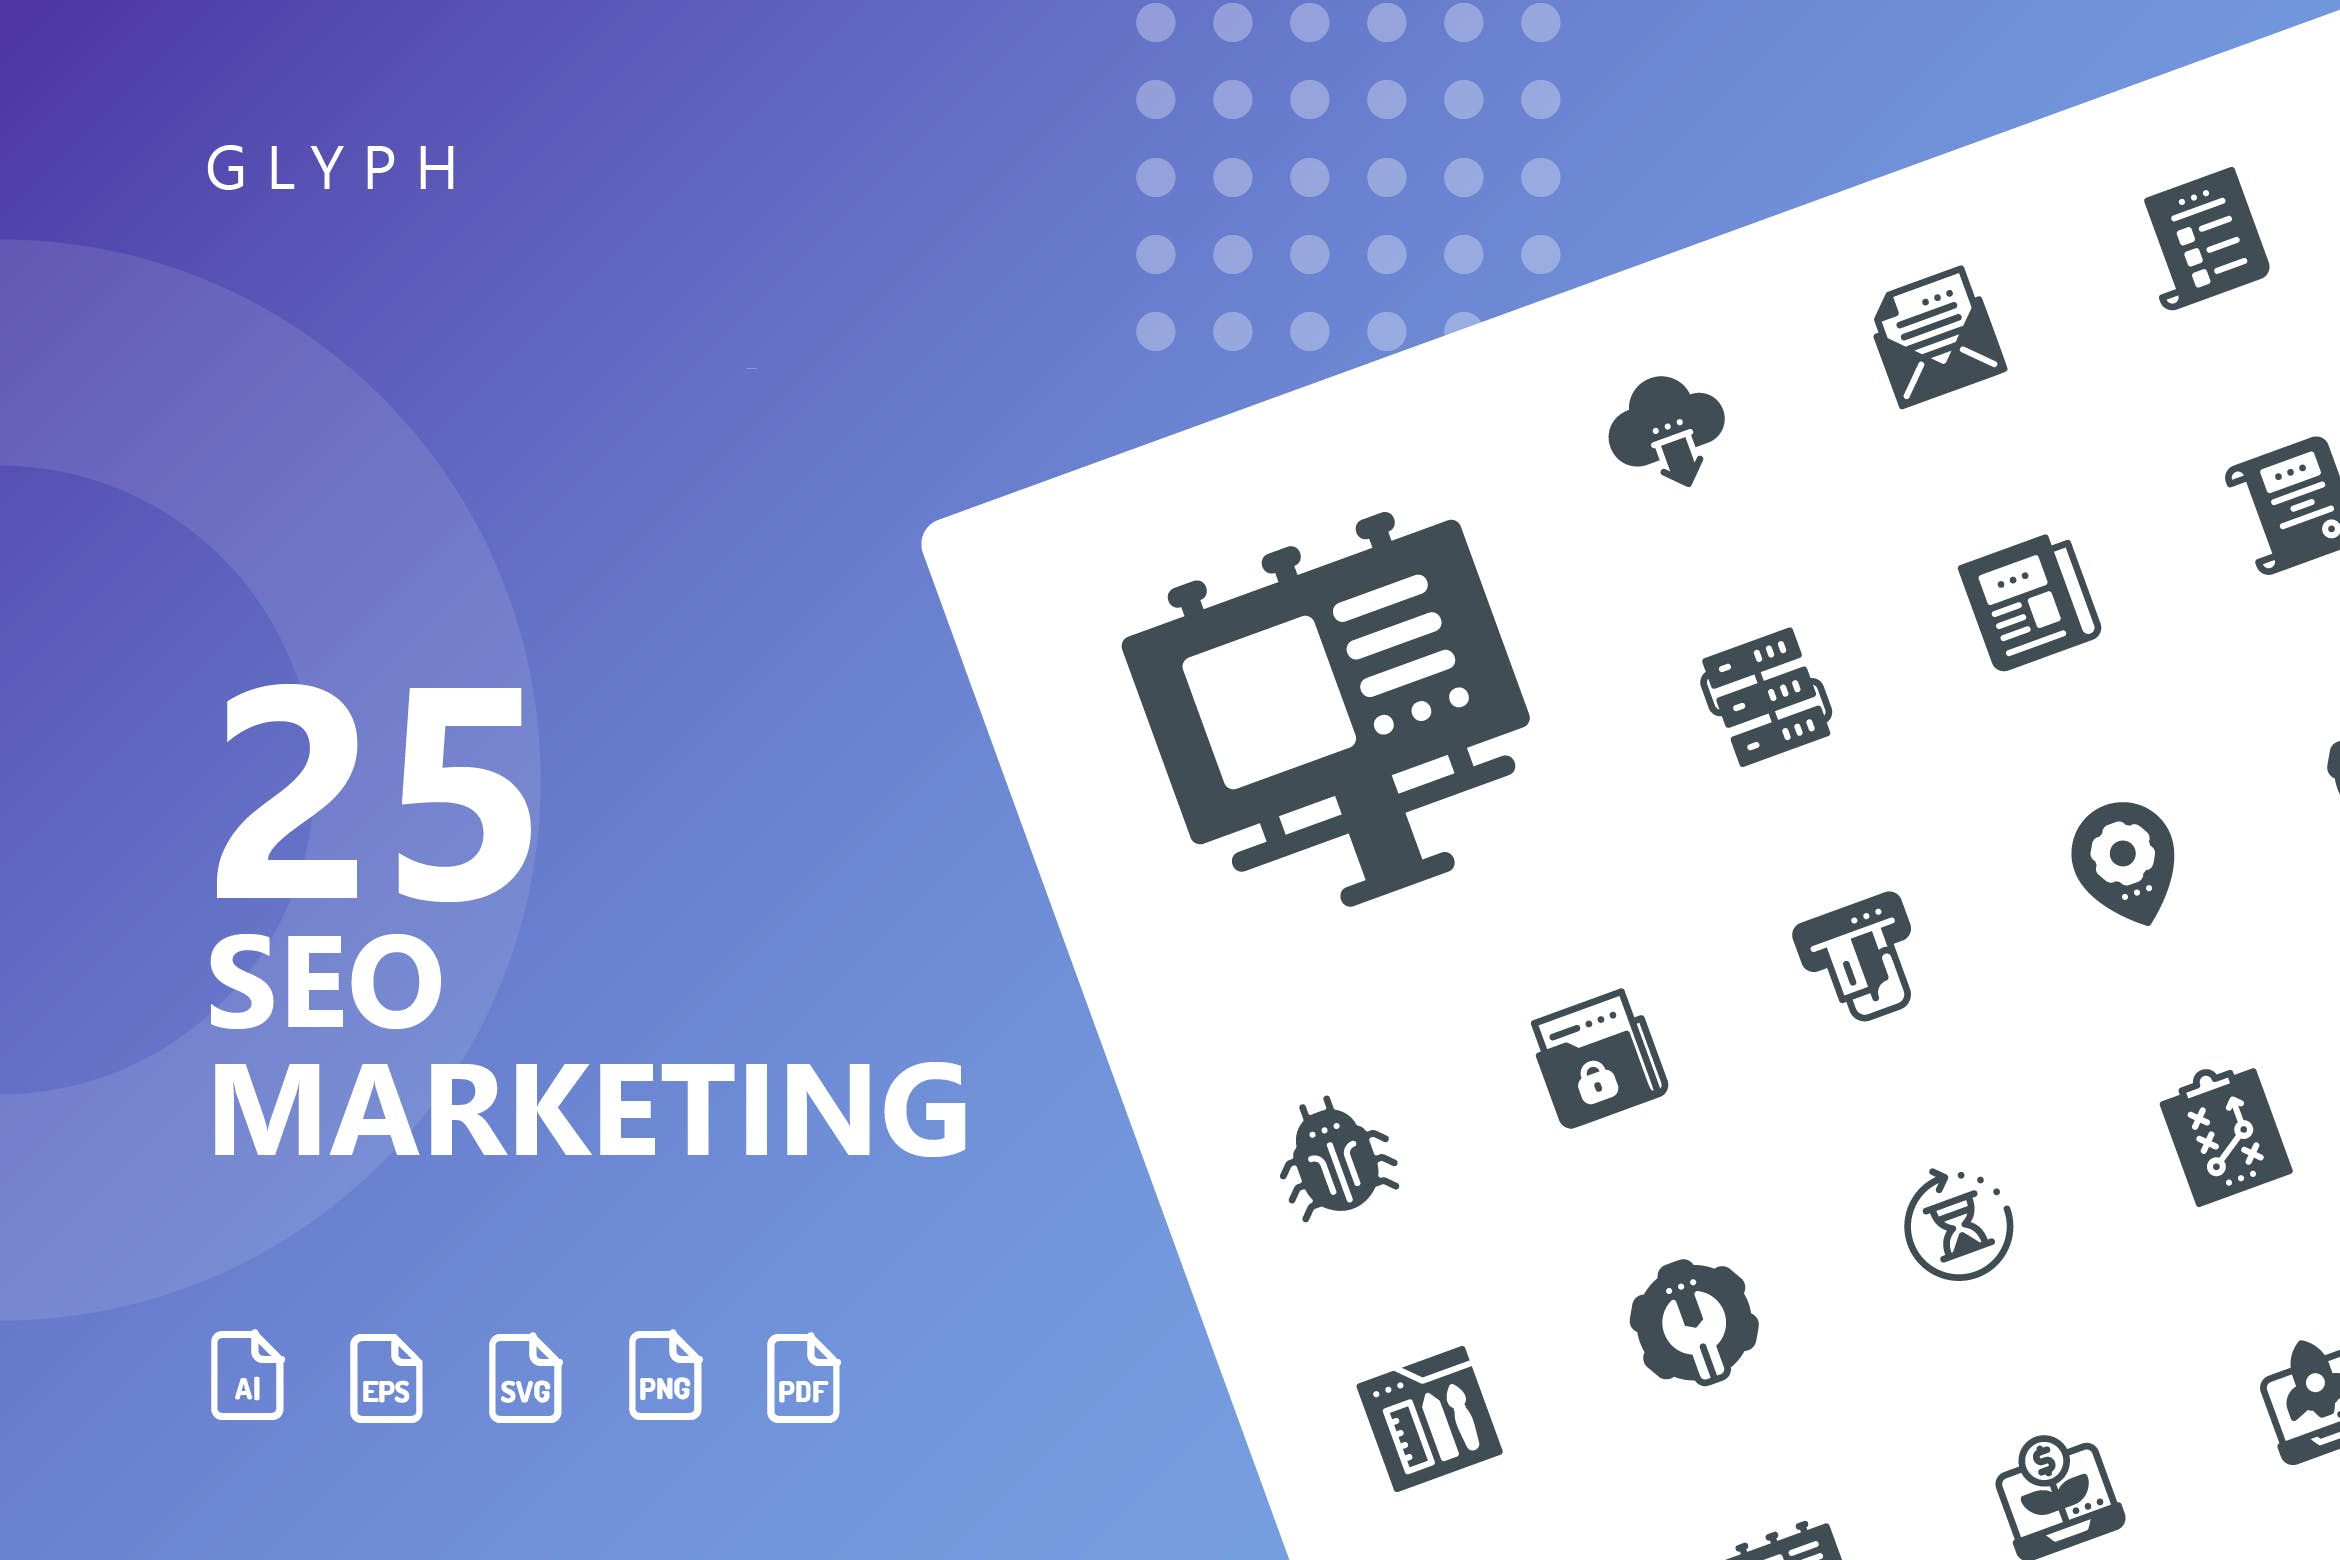 25枚SEO搜索引擎优化营销矢量字体第一素材精选图标v1 SEO Marketing Glyph Icons插图